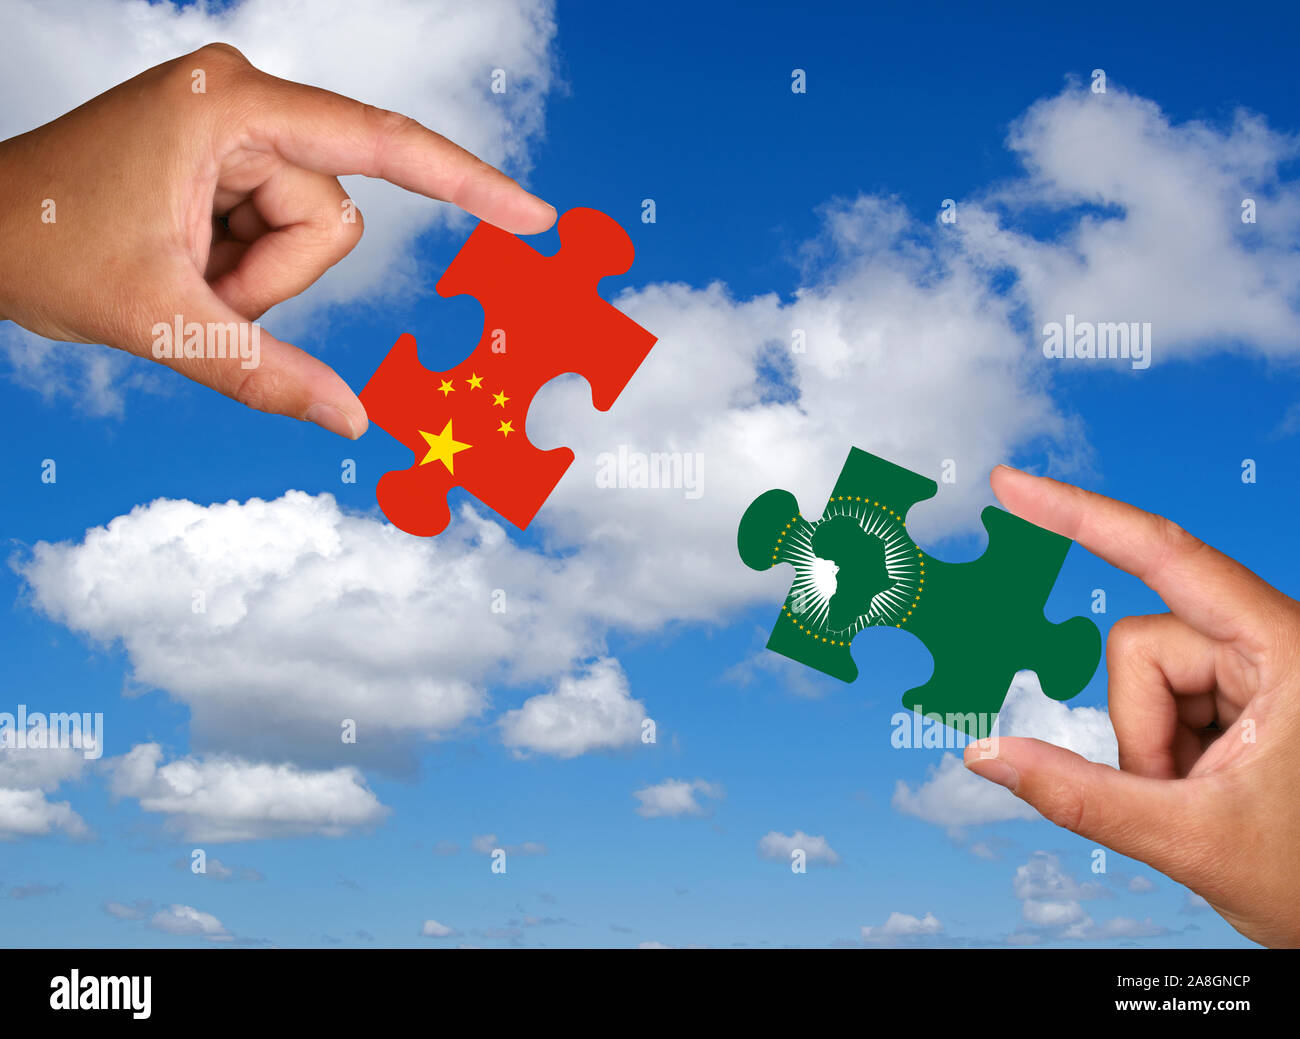 Zwei Hände halten jeweils ein Puzzle Teil, Silhouette, Annäherung  Konfrontation, Handel, Wirtschaft, Rohstoffe,., Grossmächte, Neue Seid  Photo Stock - Alamy